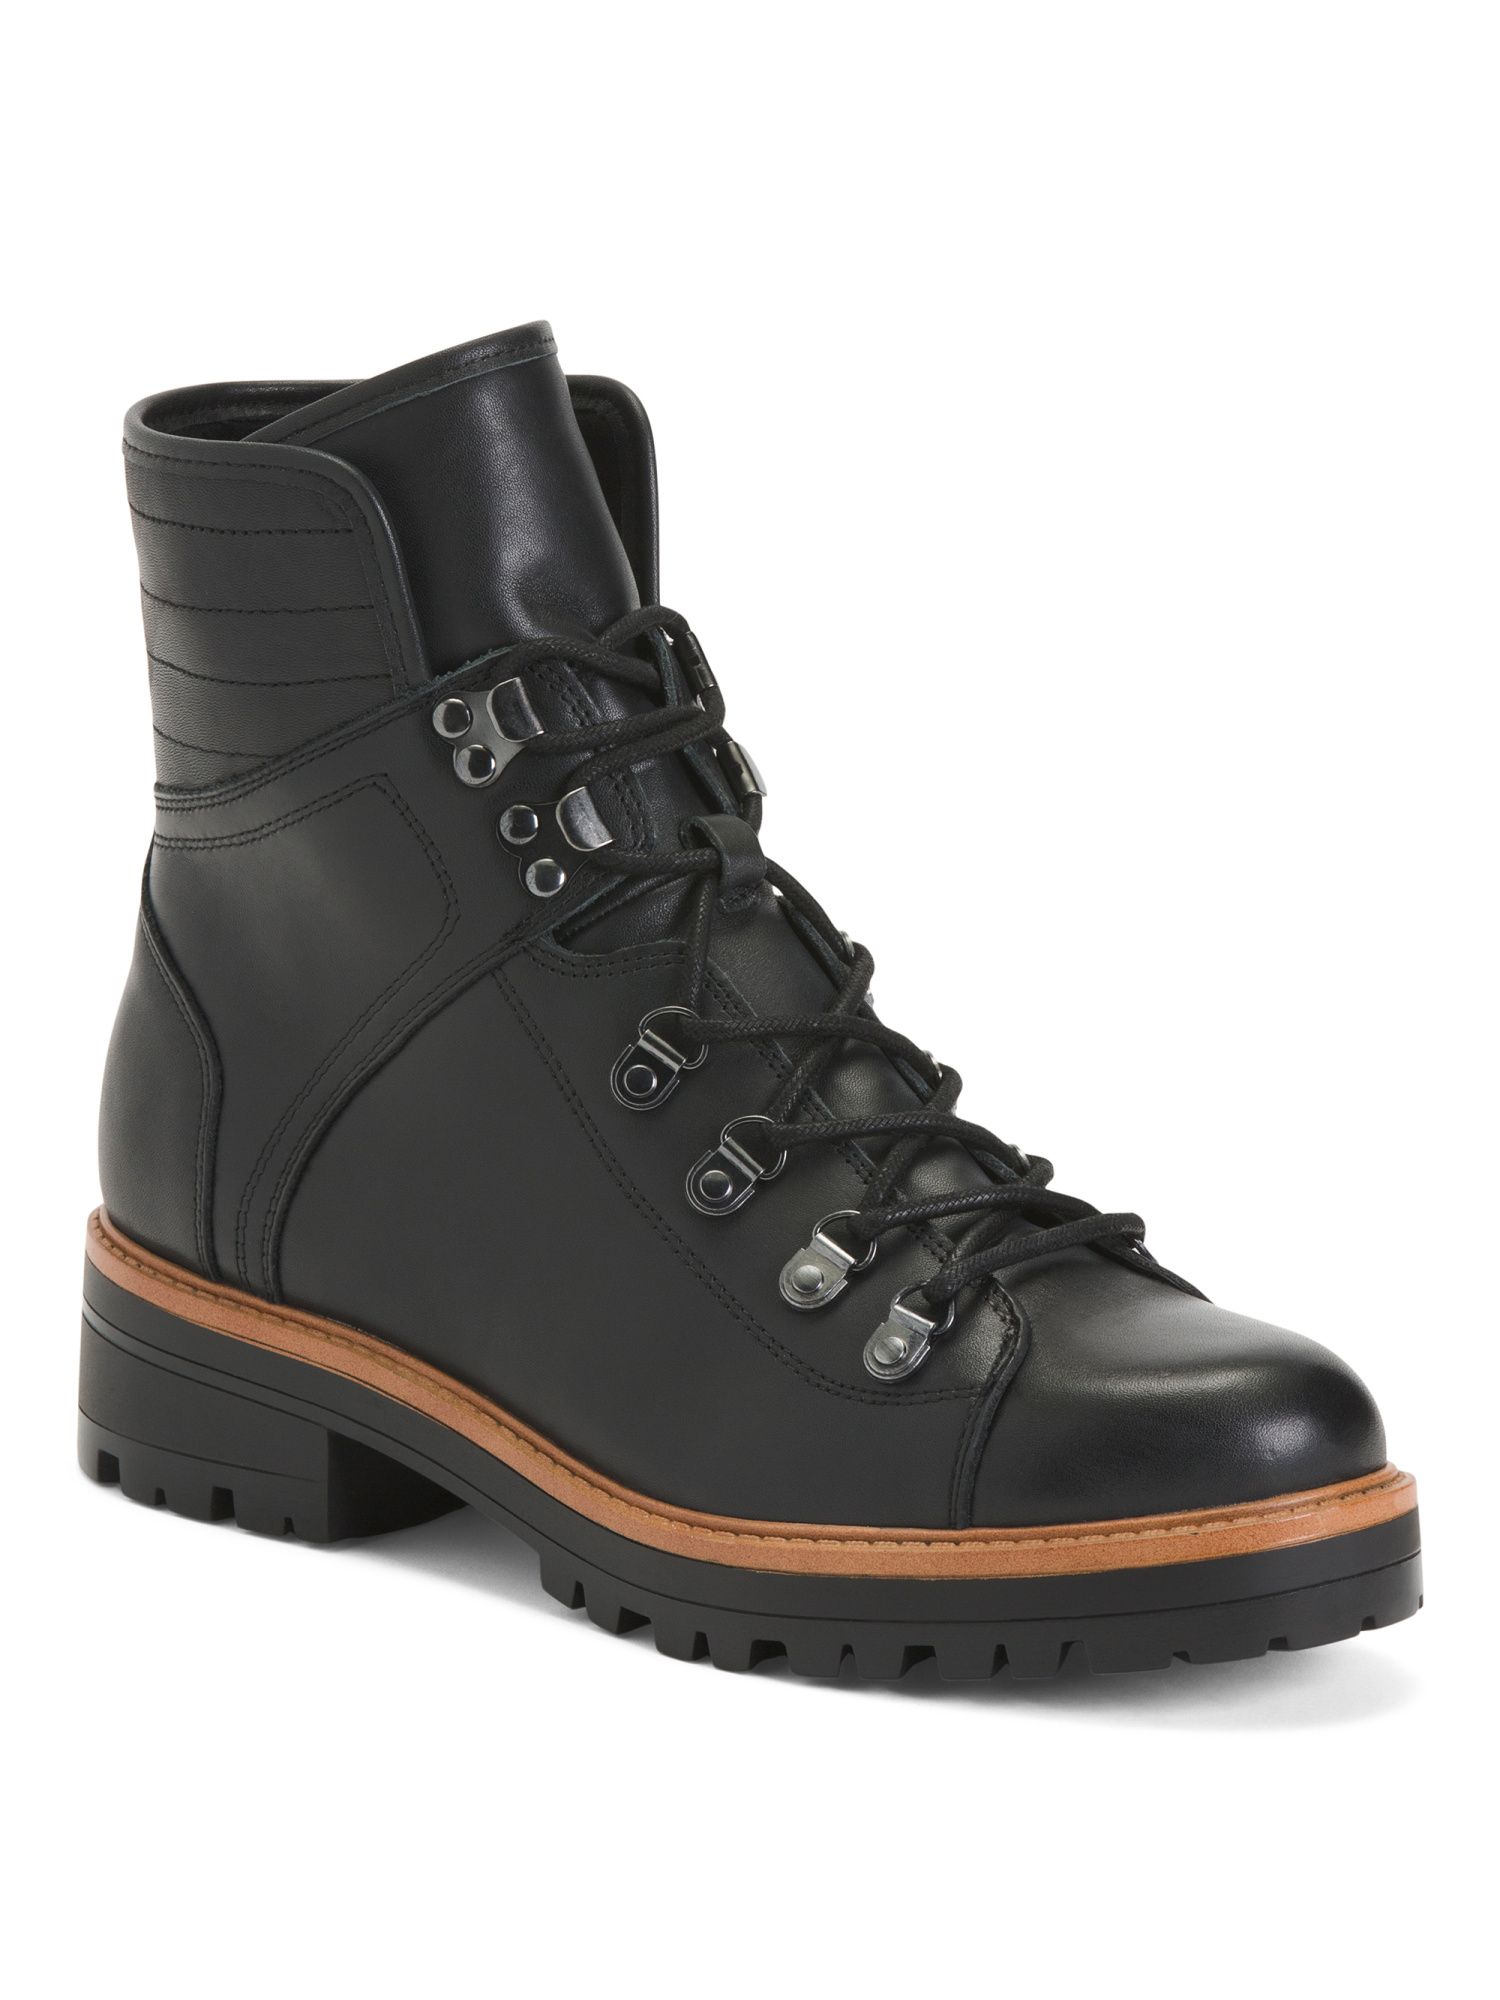 Leather Lug Sole Hiker Boots | Rain & Winter Boots | Marshalls | Marshalls